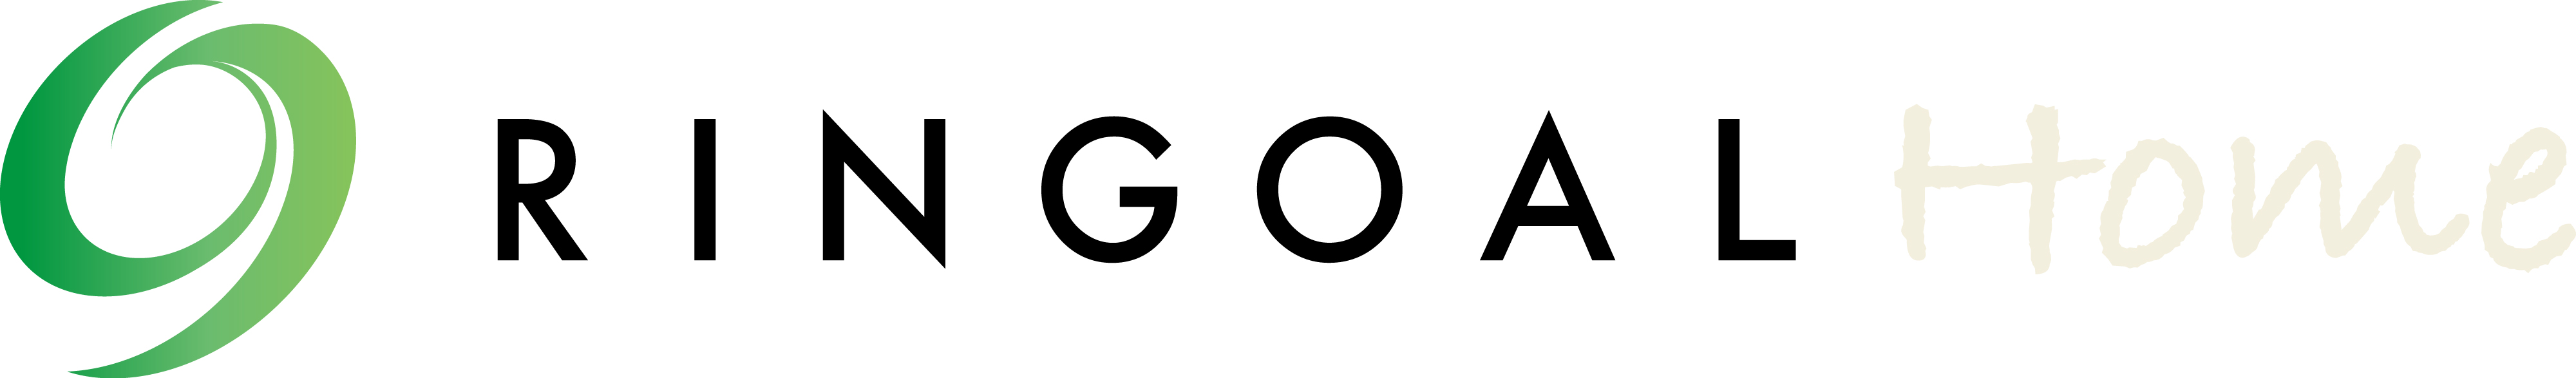 高登智慧科技股份有限公司-Logo